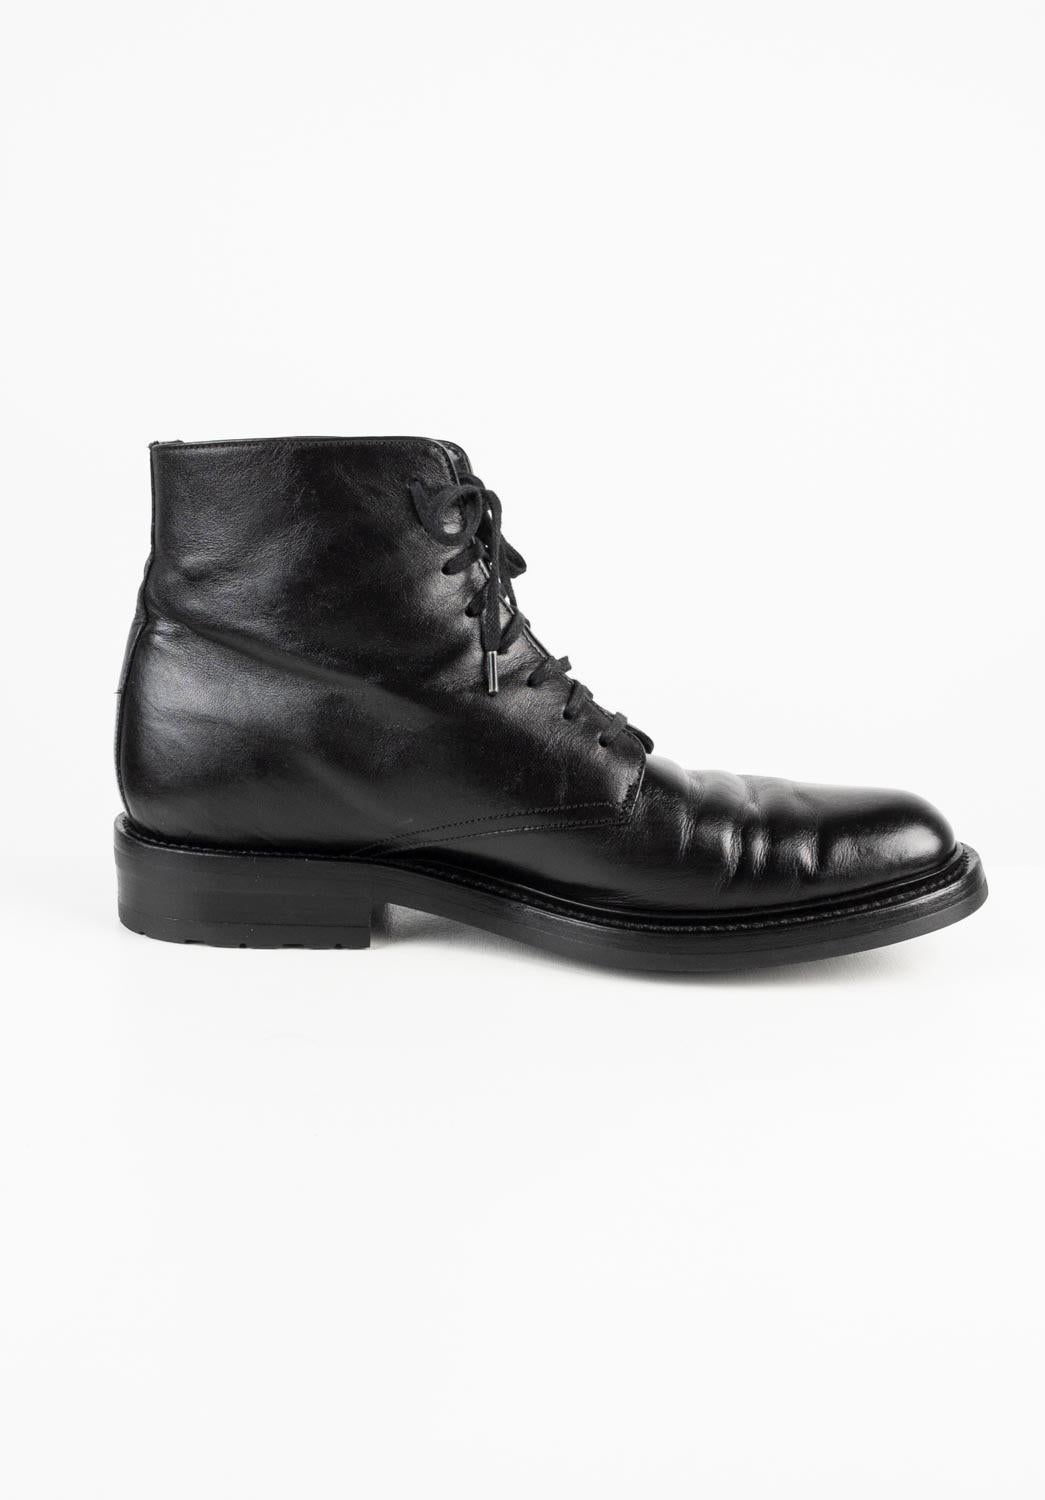 Saint Laurent Paris Men Shoes Miliary Boots Size EUR41, USA 7 ½, S563 In Excellent Condition For Sale In Kaunas, LT